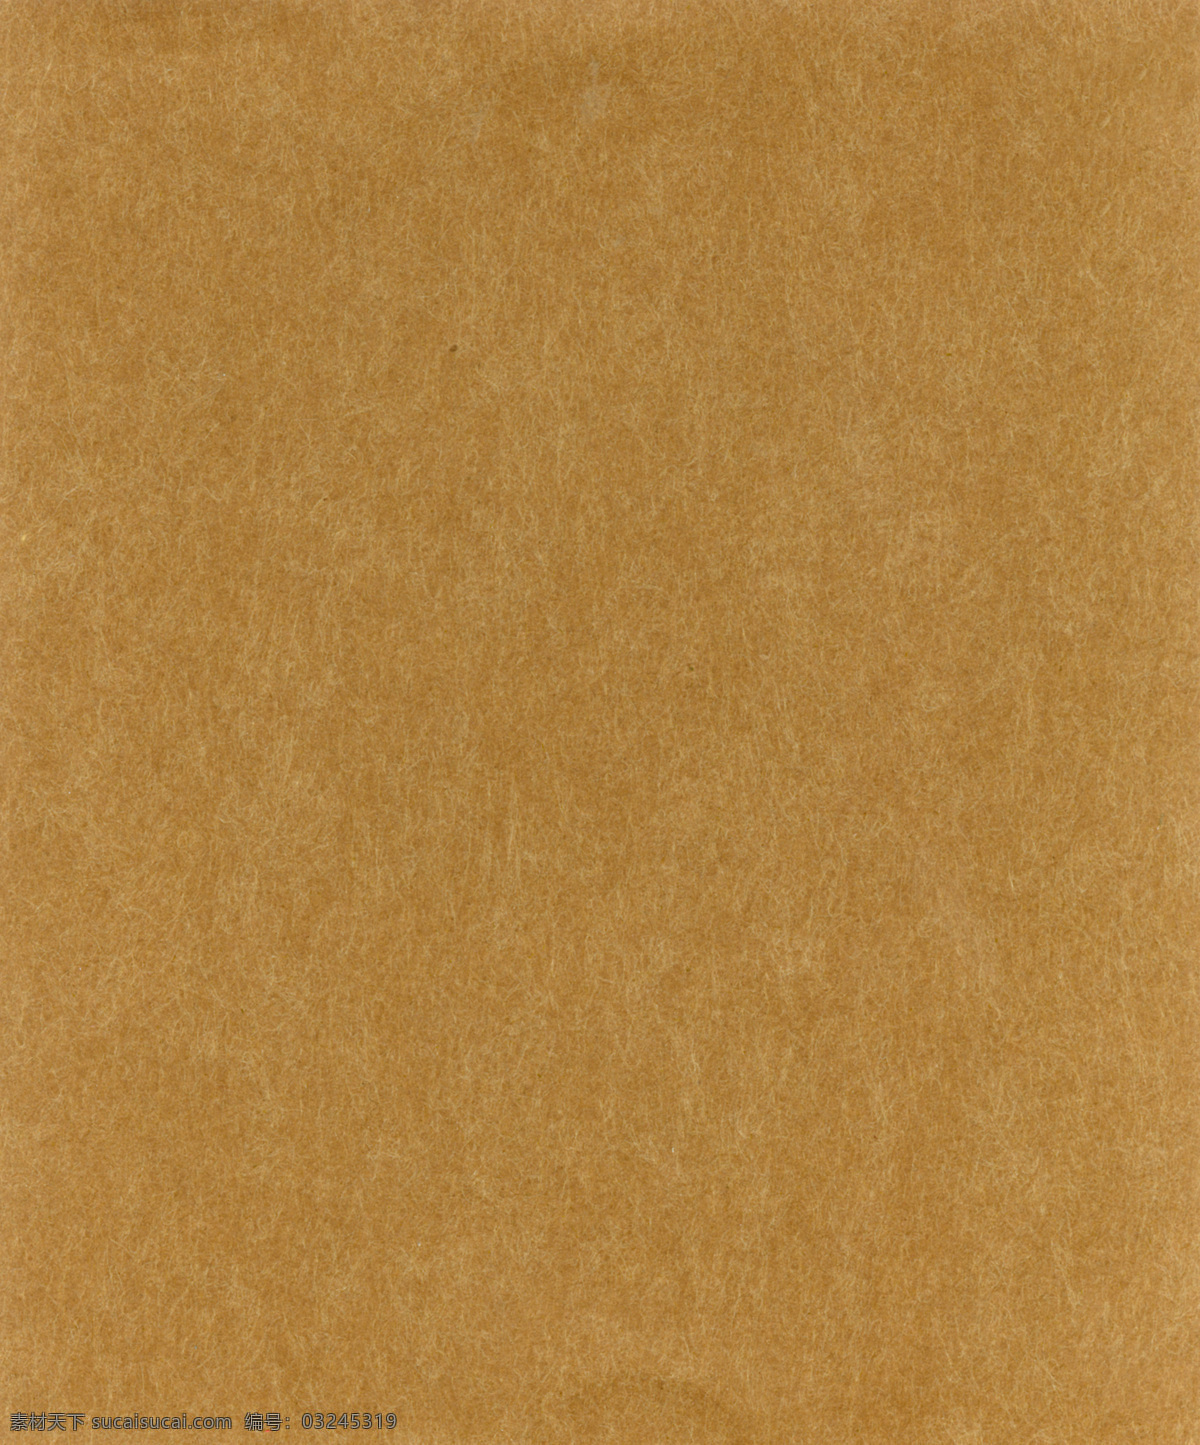 特种纸素材 纸特种纸素材 褐黄色 羊绒纸 特种纸 肌理 纸纹 底纹 复古 纹理 背景 背景底纹 底纹边框 纸面纹理素材